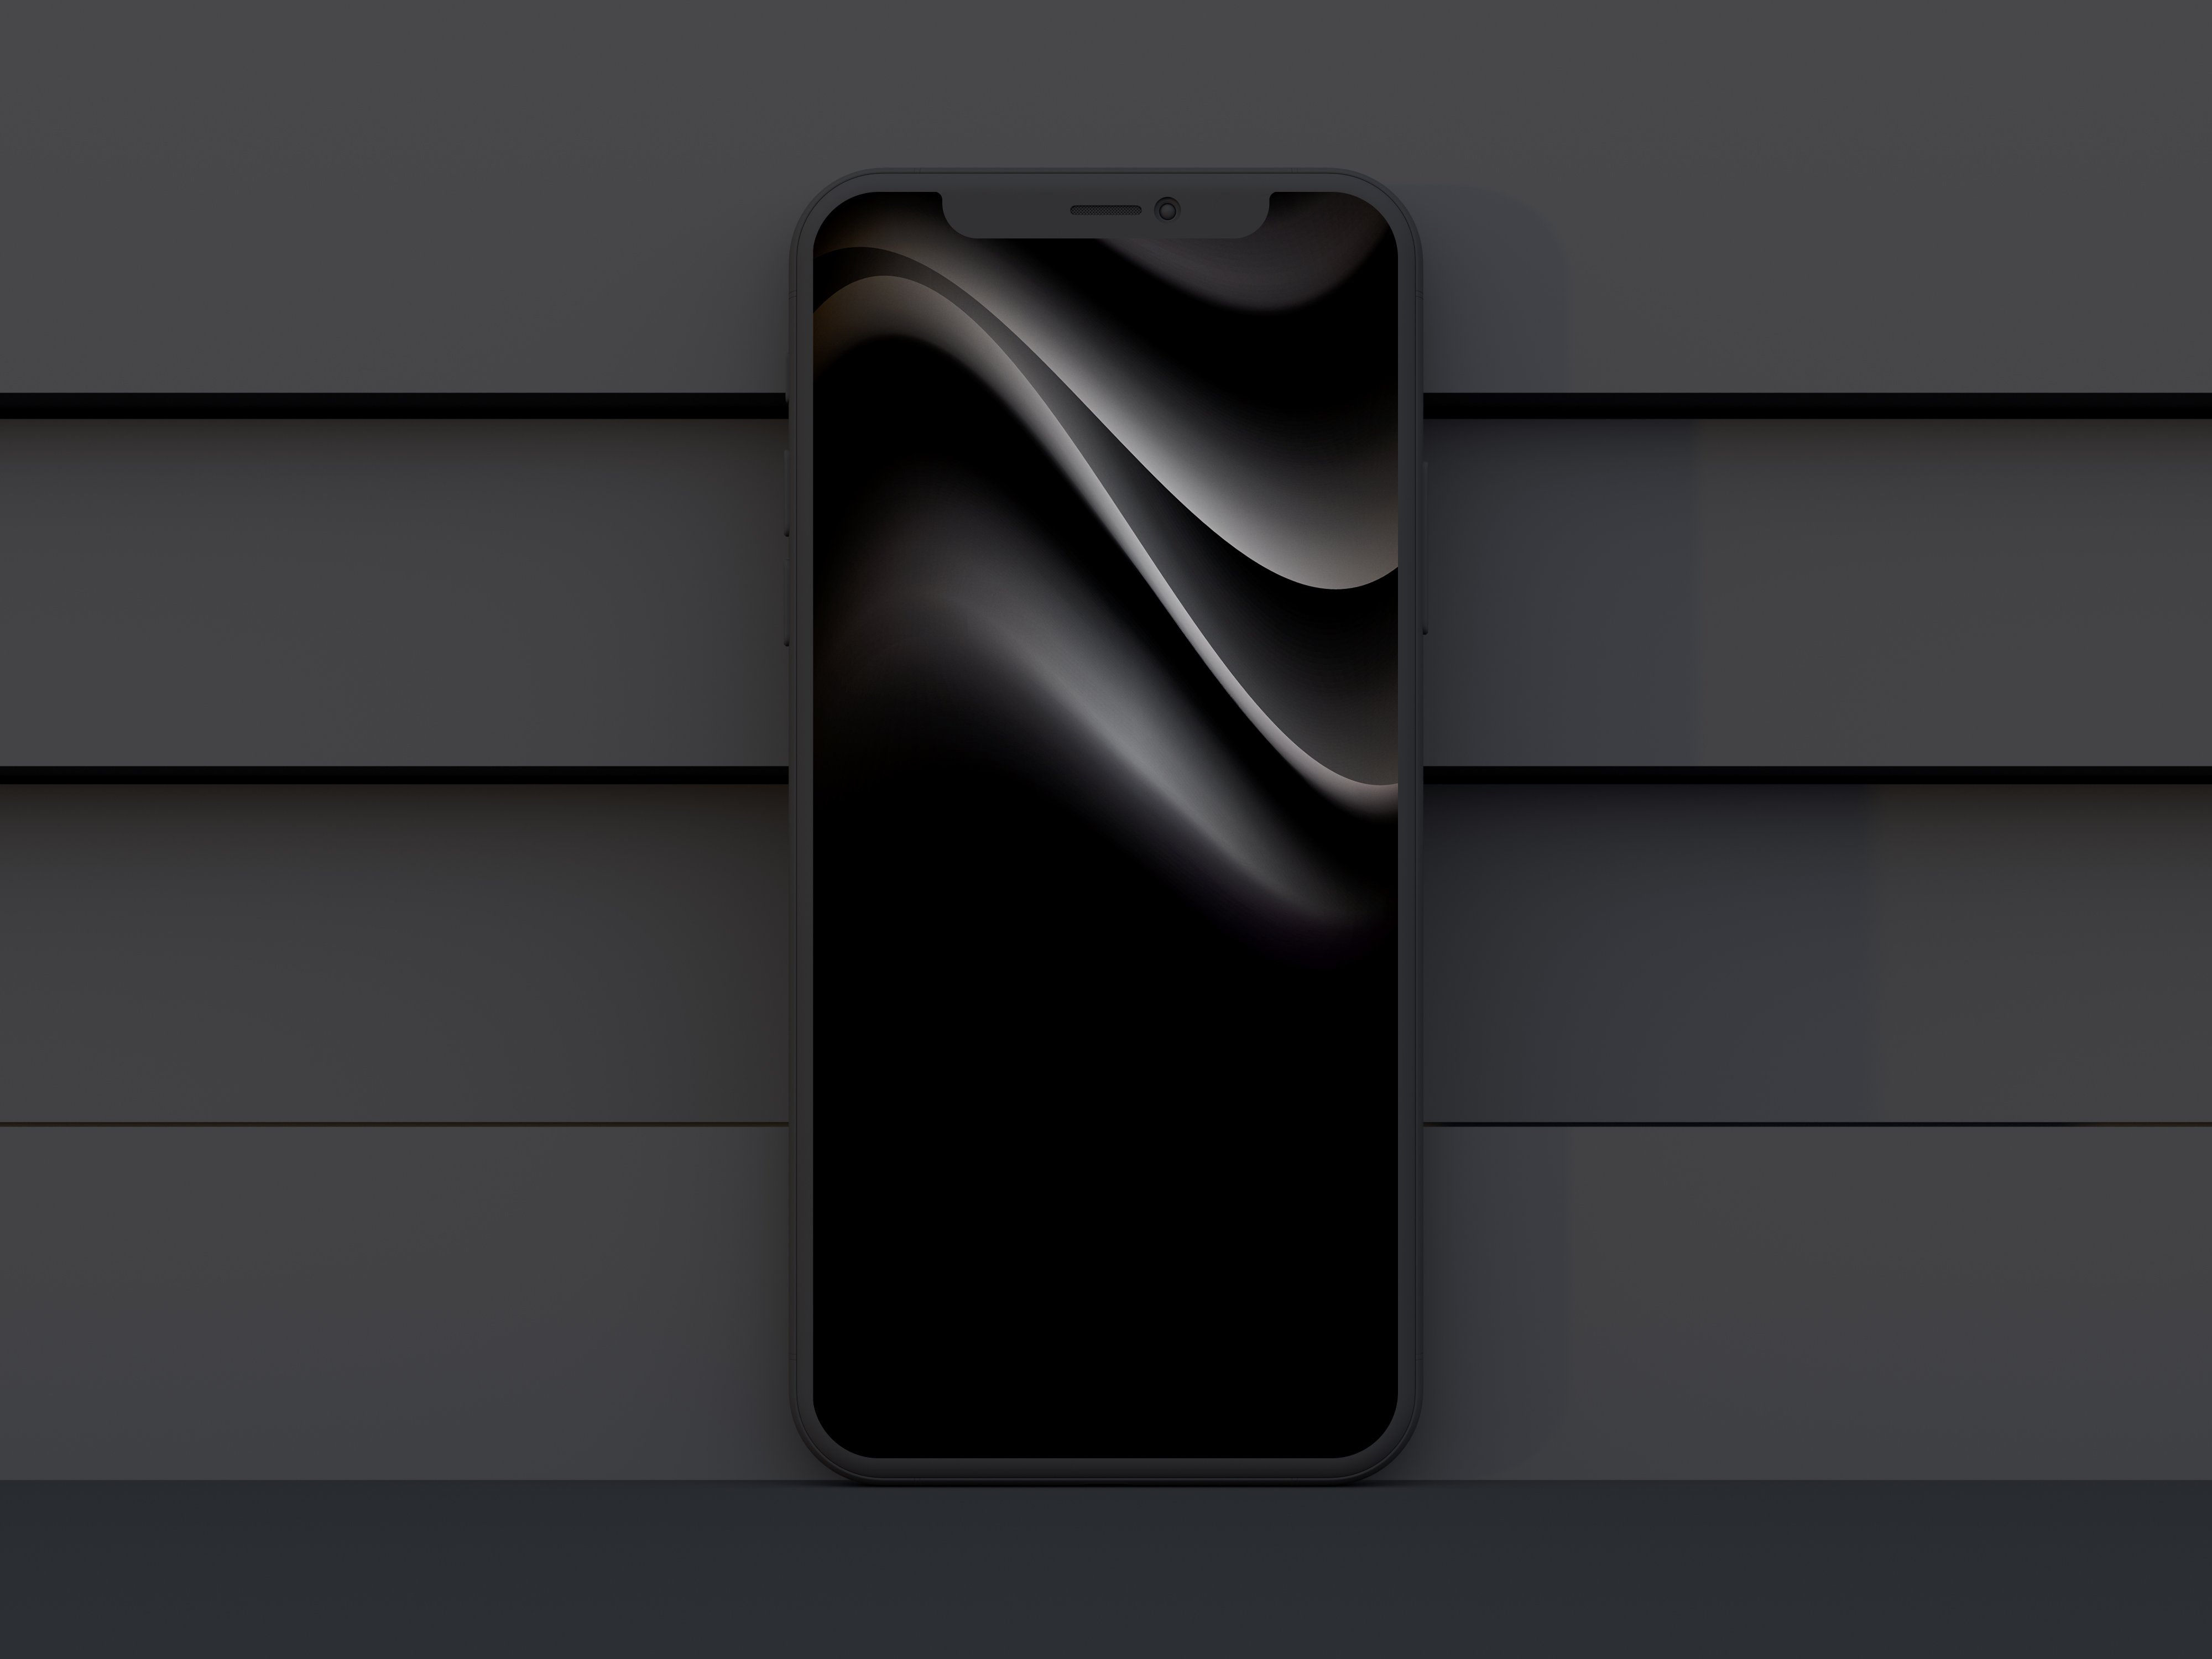 Bức ảnh về iOS 13 với chế độ Dark Mode và Concept Wallpaper sẽ khiến bạn trầm trồ. Tông màu tối cùng thiết kế hiện đại sẽ đem lại không gian làm việc đẹp mắt và đầy lôi cuốn cho chiếc điện thoại của bạn.